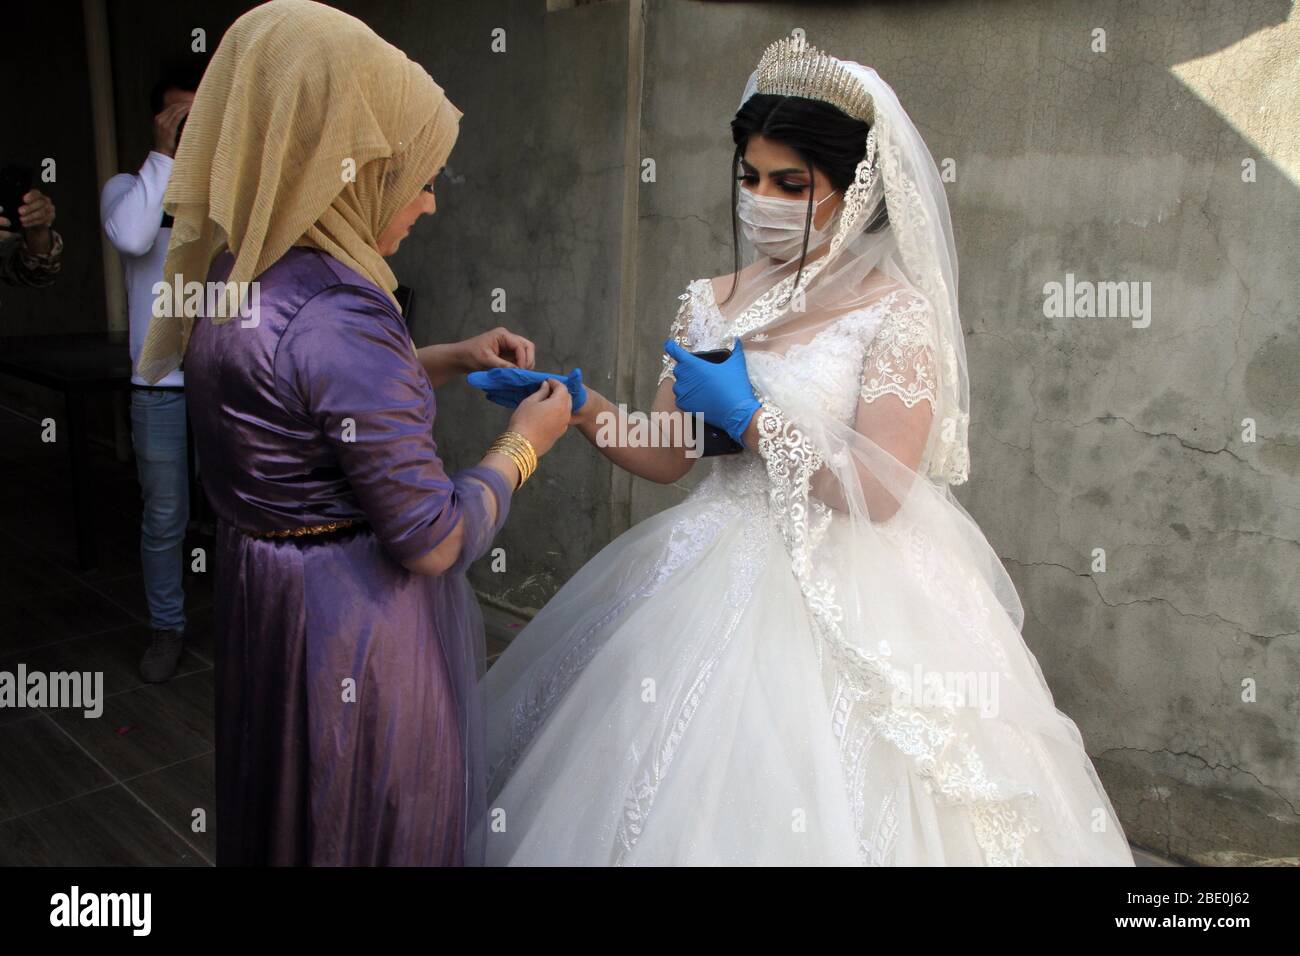 200410) -- KIRKUK (IRAQ), 10 aprile 2020 (Xinhua) -- la sposa Nourhan è  aiutata con i guanti nella paura del COVID-19 durante il suo matrimonio a  Kirkuk, Iraq, il 10 aprile 2020.